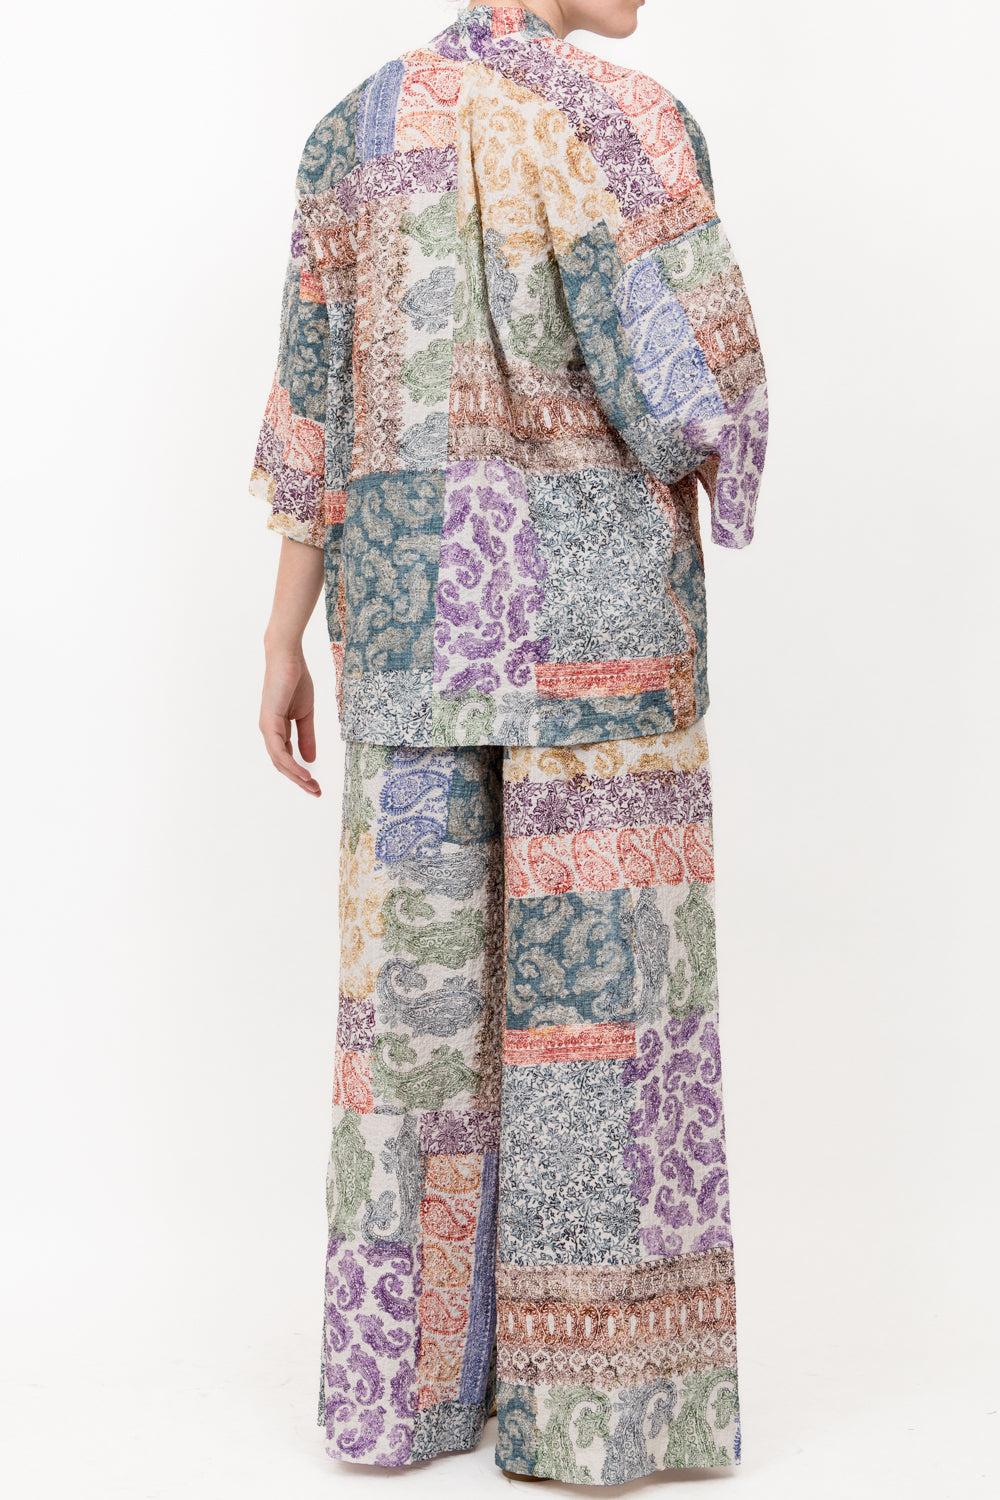 Tensione In - Giacca kimono fantasia con fiocco Art. PE24-7165